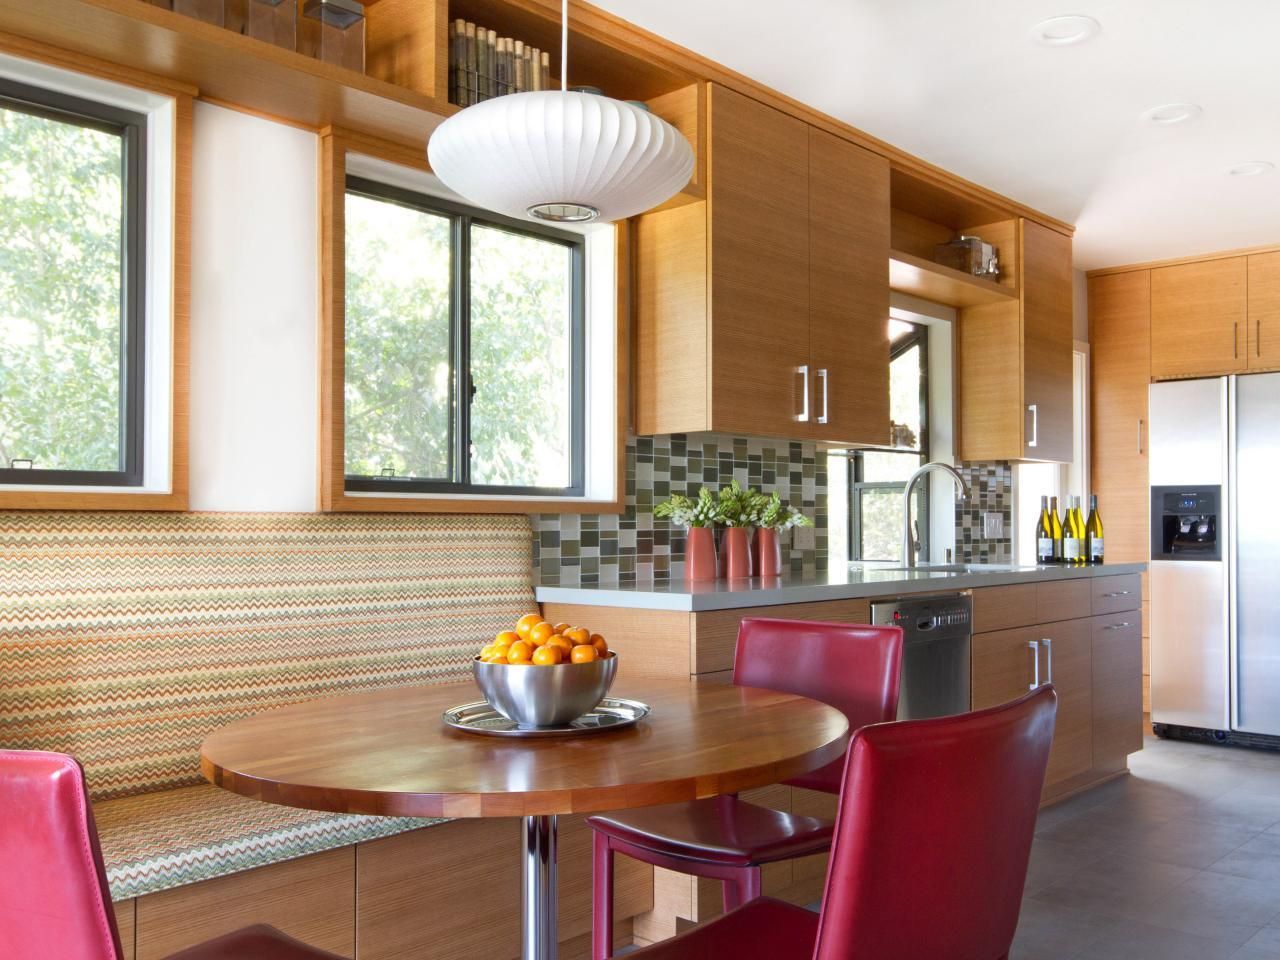 Rund bord i køkkenet: en klassisk accent i et moderne interiør